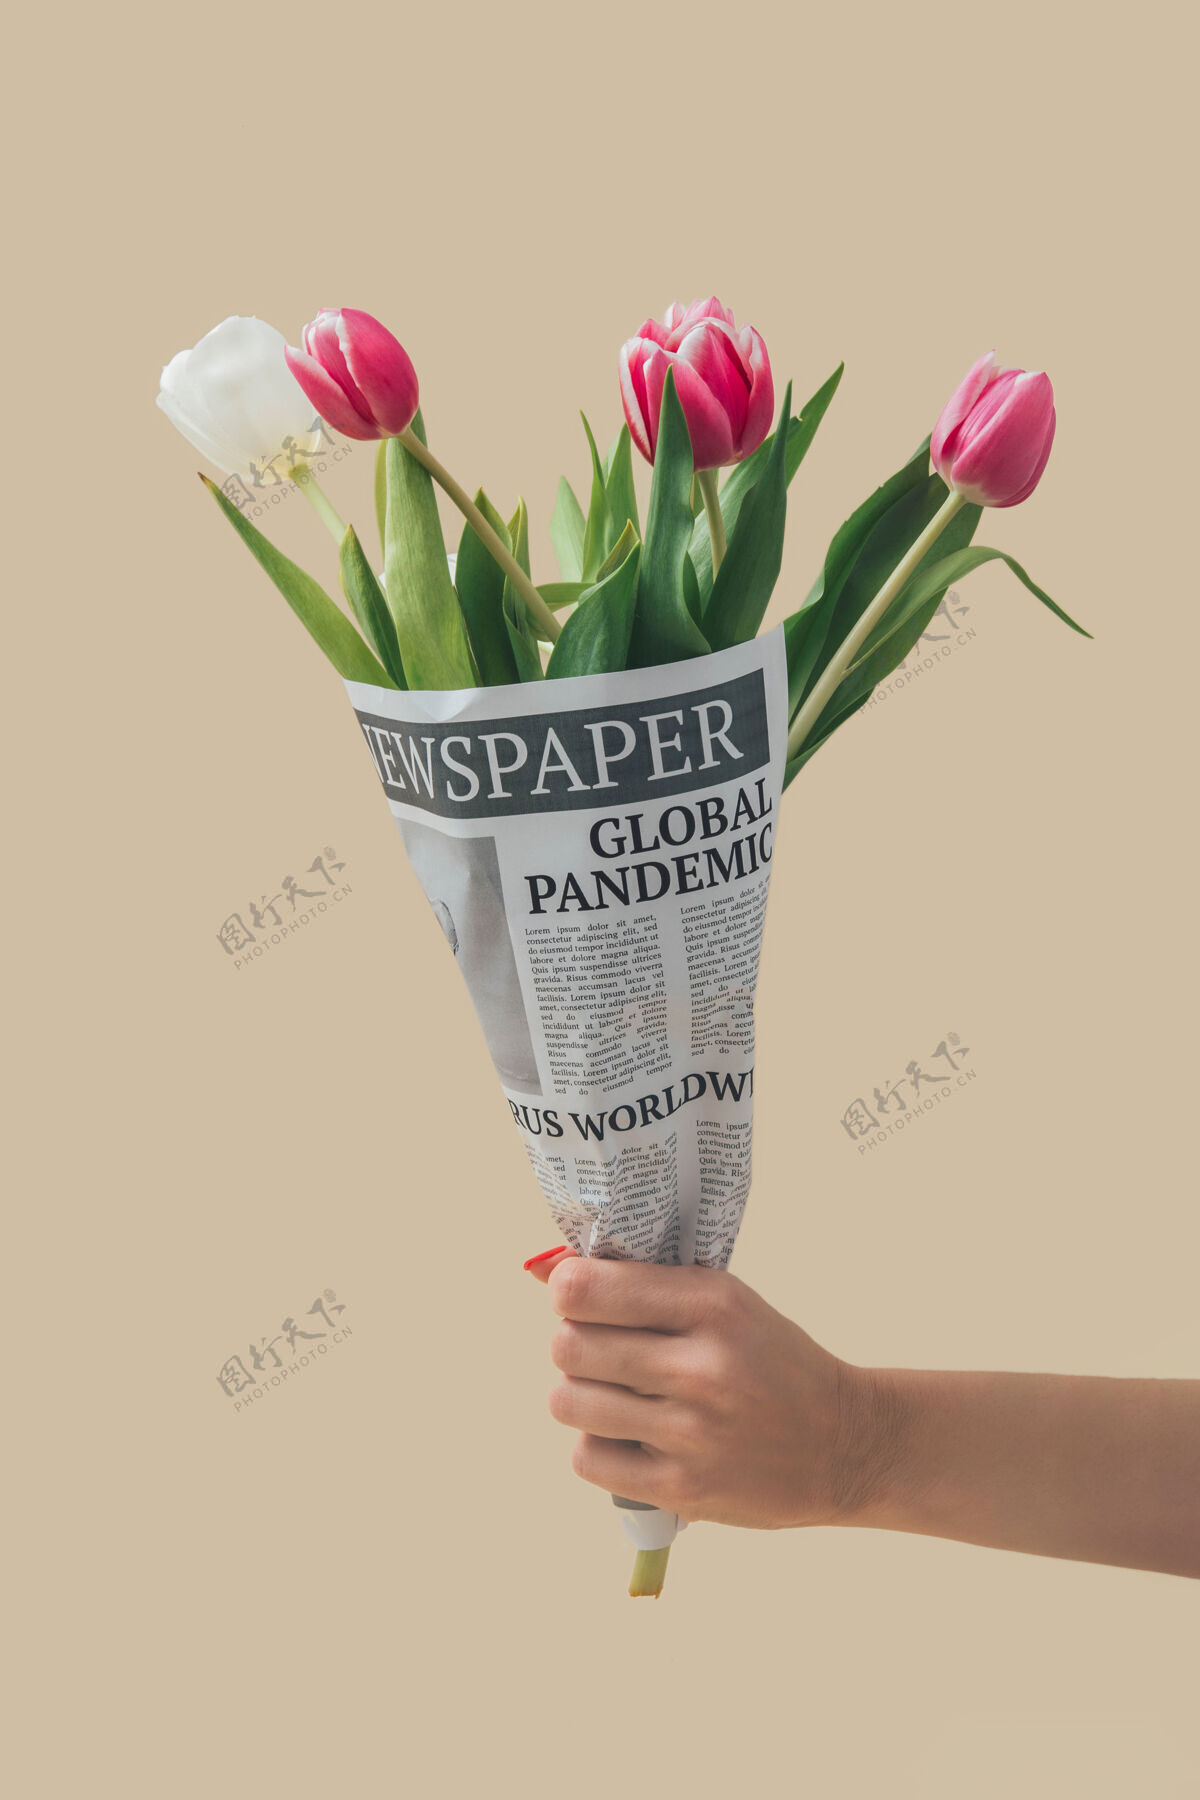 郁金香春天的郁金香花在报纸上包裹着全球大流行的标题世界冠状病毒新闻